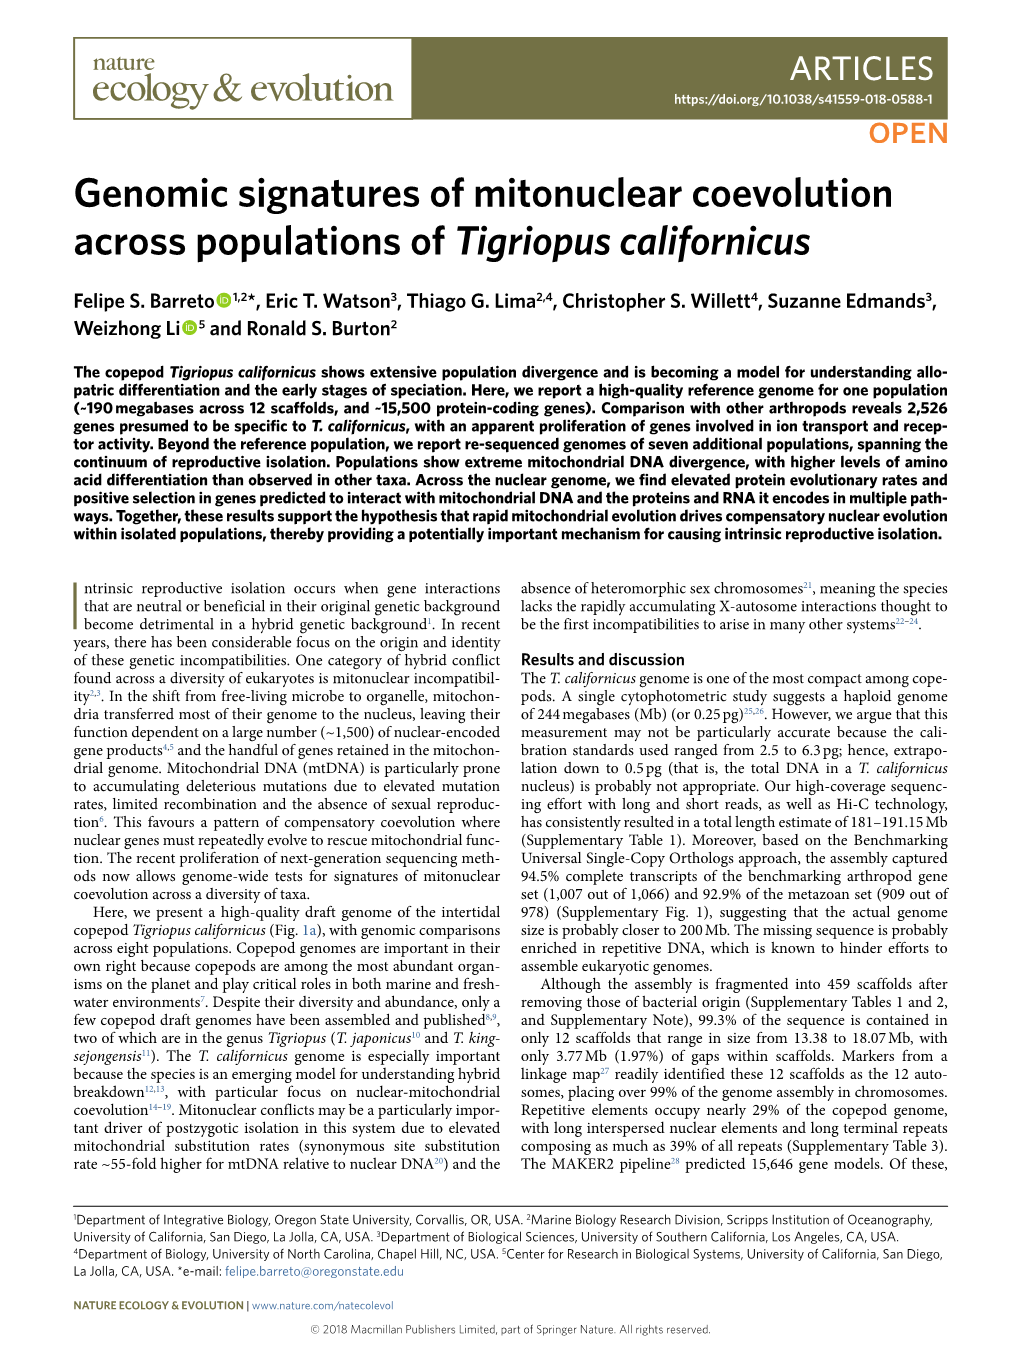 Genomic Signatures of Mitonuclear Coevolution Across Populations of Tigriopus Californicus